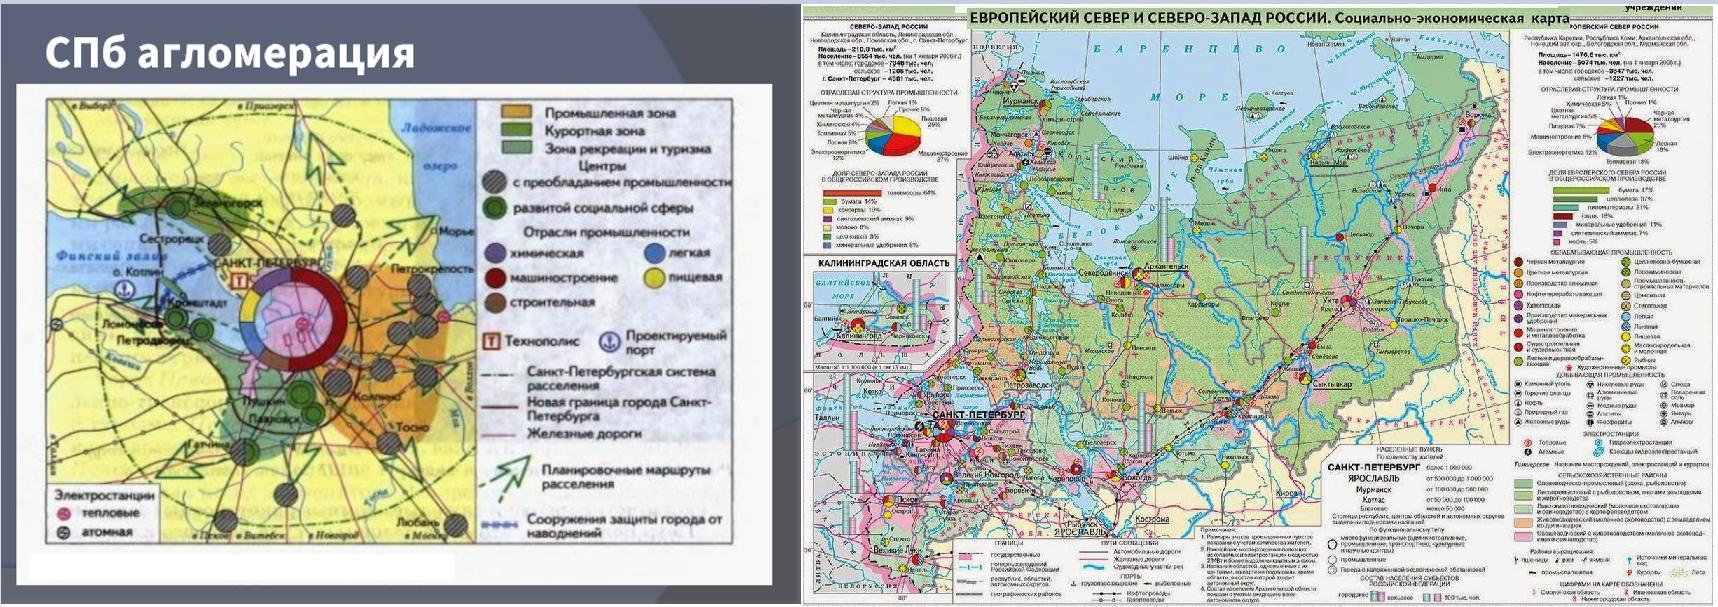 Экономические районы европейской части россии 9. Экономическая карта европейского севера России.